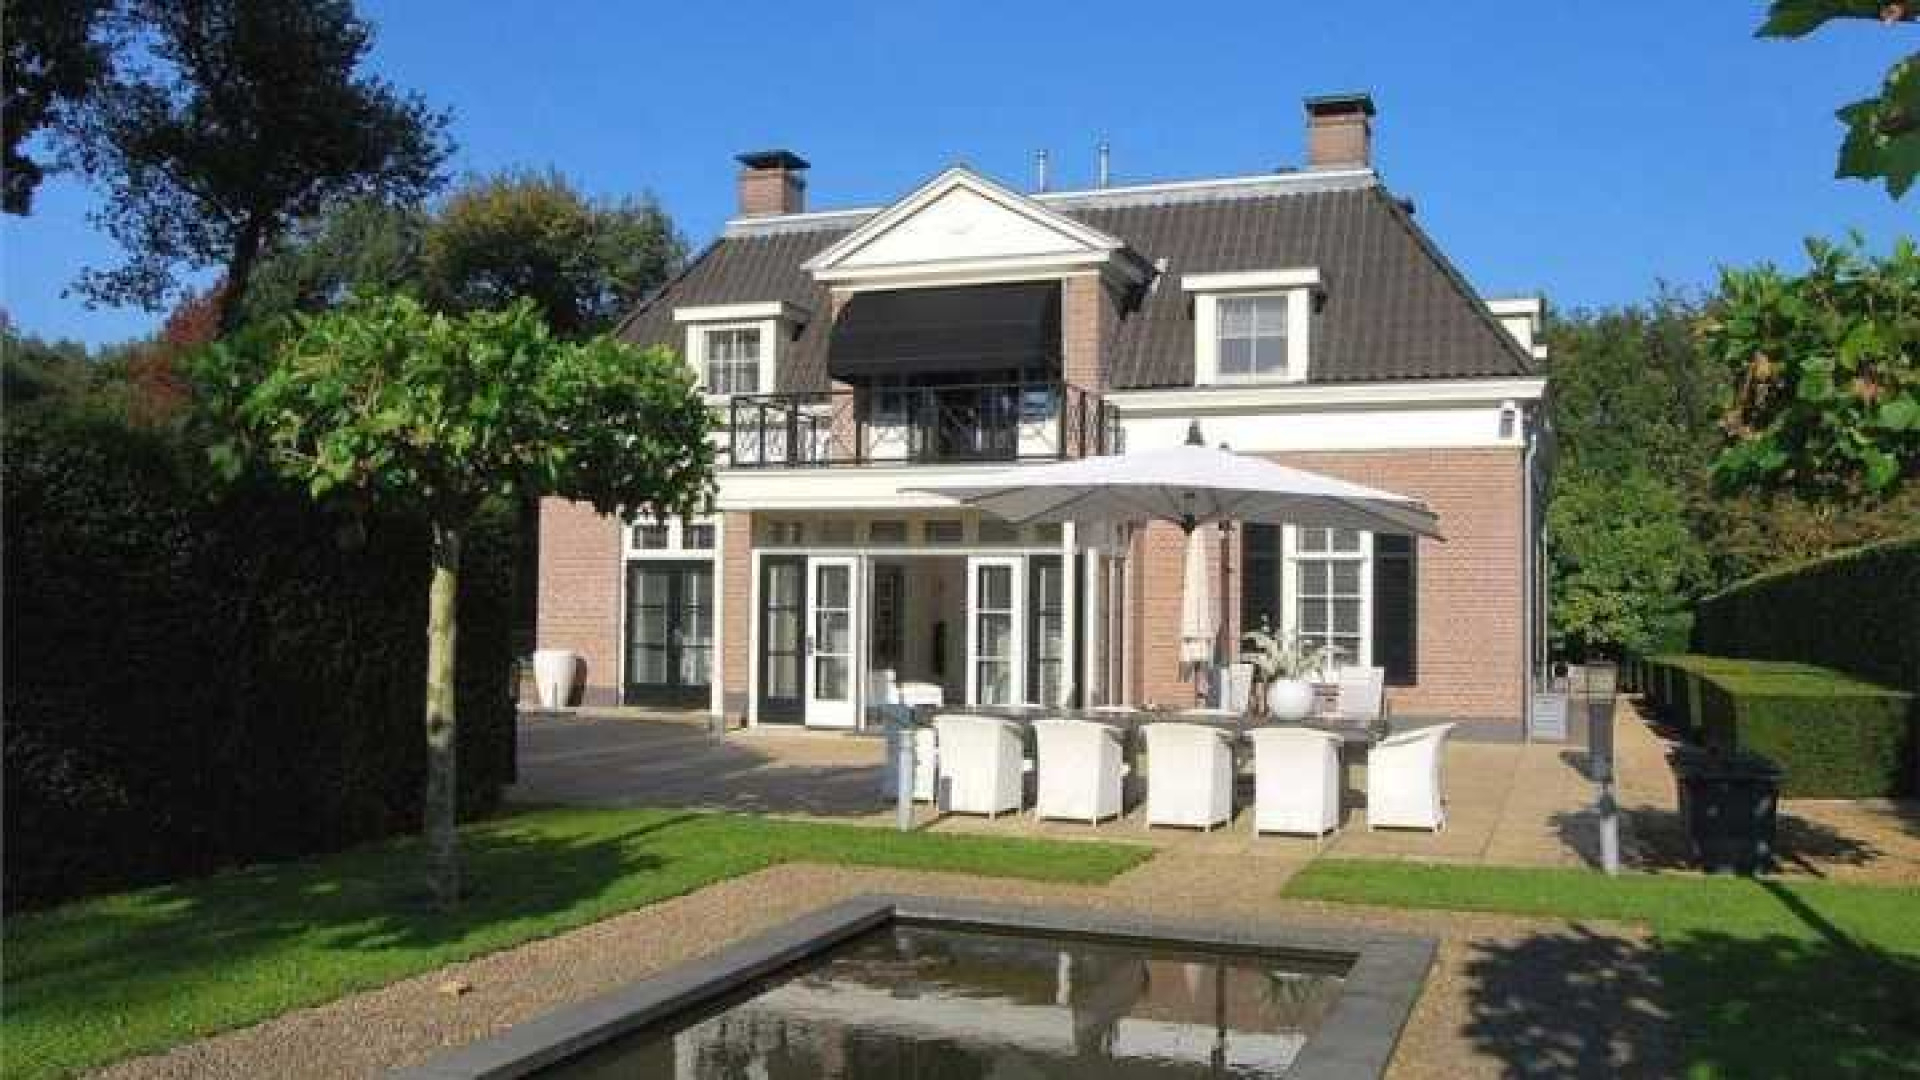 Ronald Koeman duikelt met vraagprijs van zijn luxe villa omlaag. Zie foto's